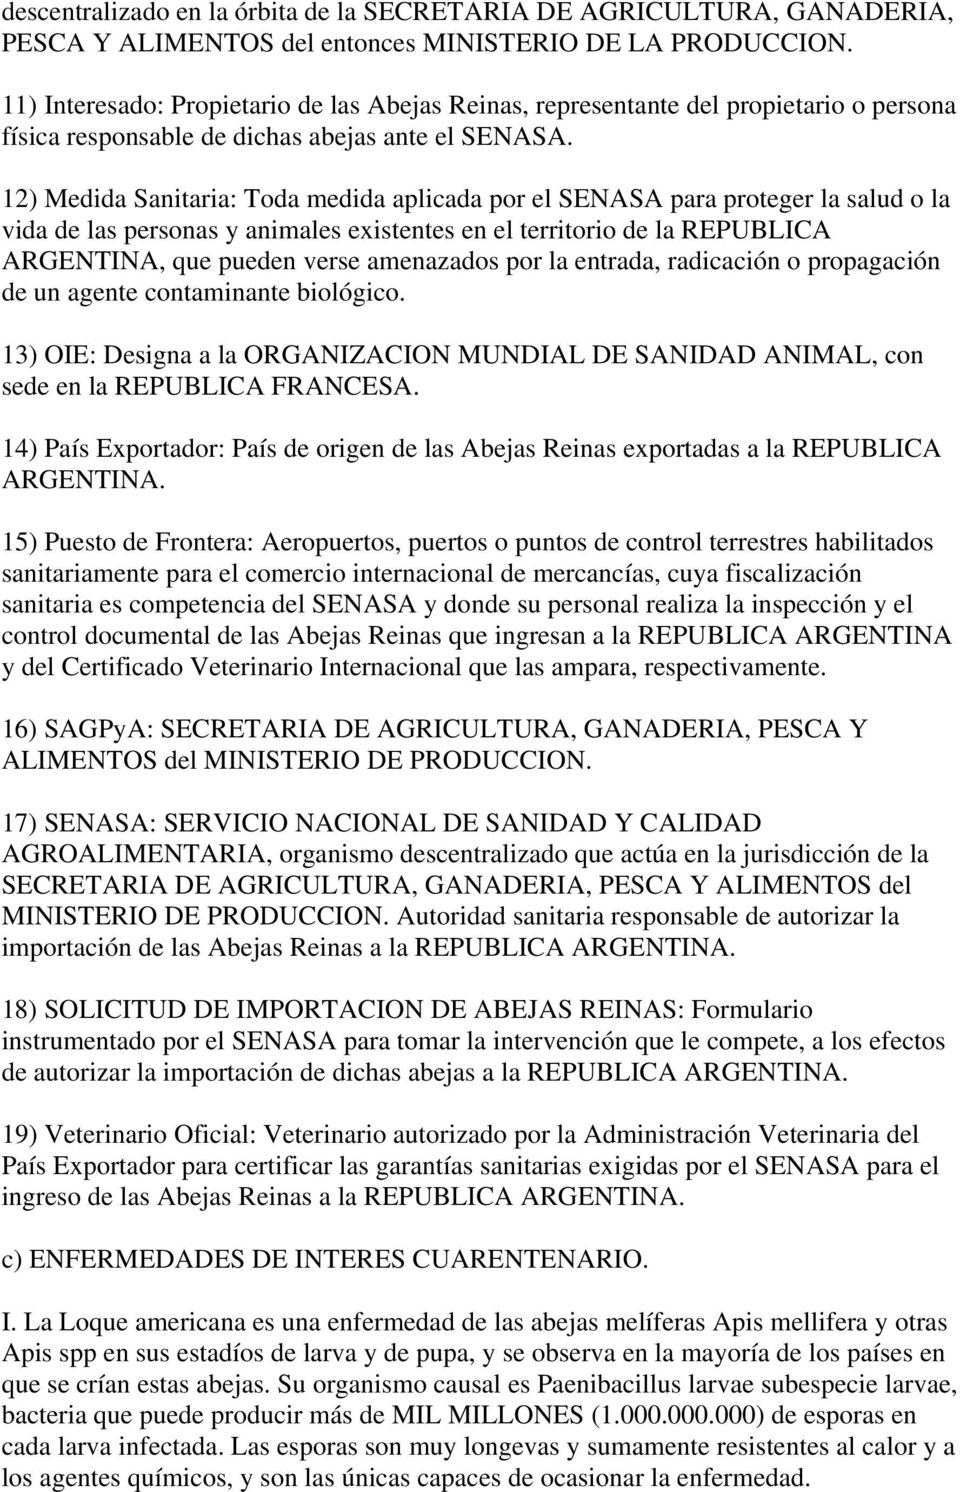 12) Medida Sanitaria: Toda medida aplicada por el SENASA para proteger la salud o la vida de las personas y animales existentes en el territorio de la REPUBLICA ARGENTINA, que pueden verse amenazados